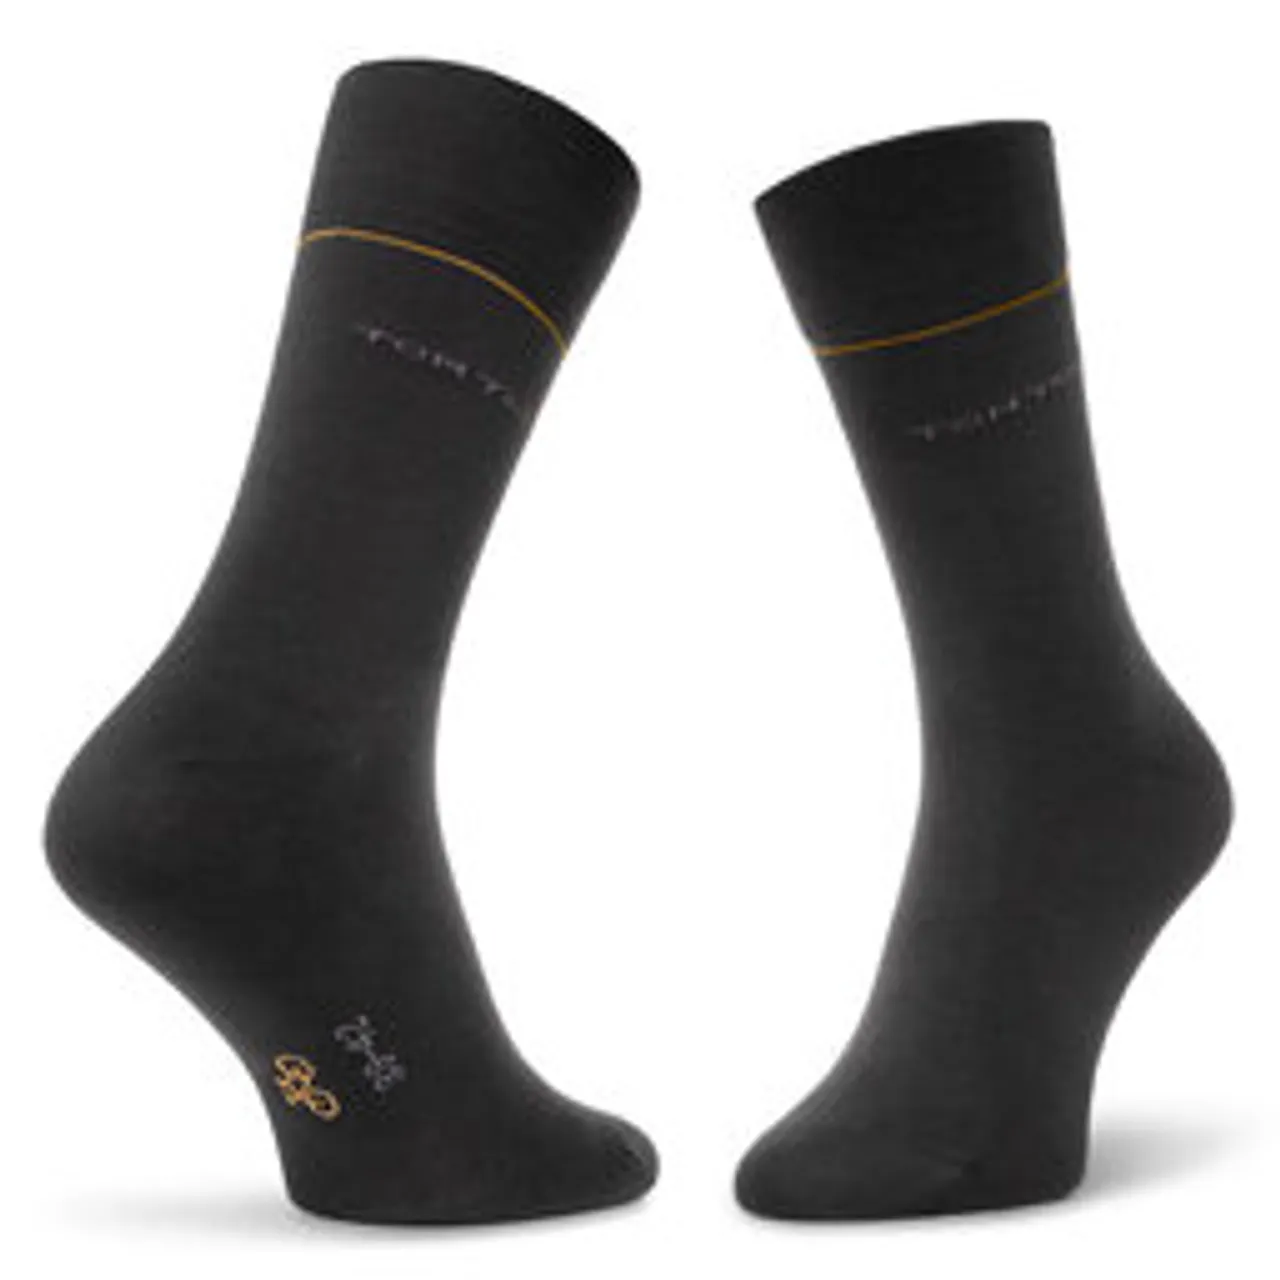 7er-Set hohe Unisex-Socken Tom Tailor 9997 Black 610